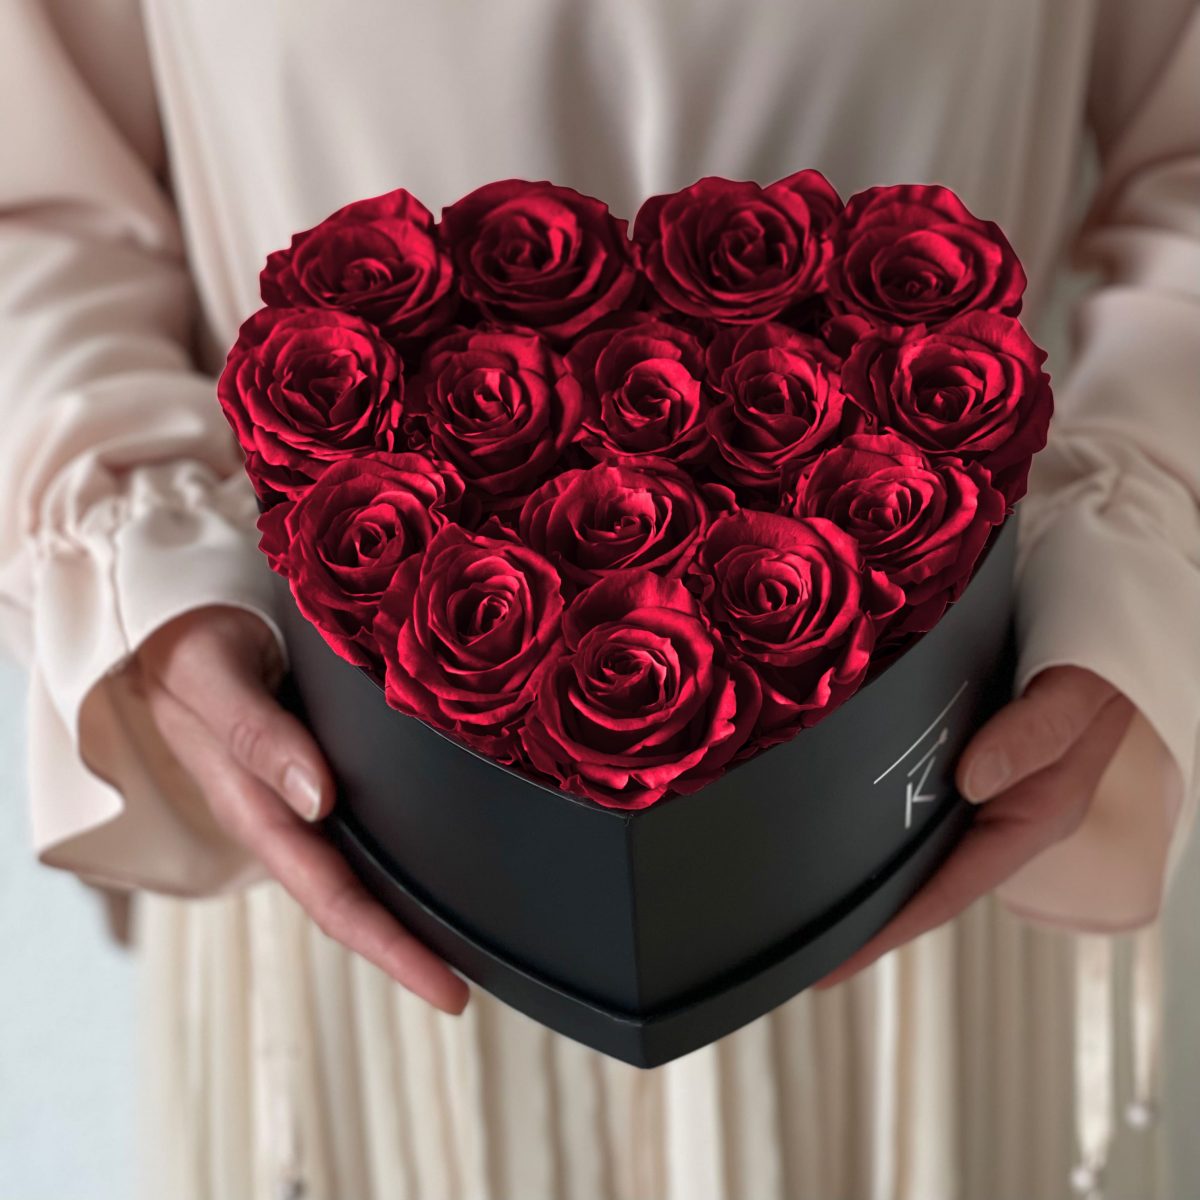 Herzförmige Rosenbox mit roten Infinityrosen wird in den Händen gehalten